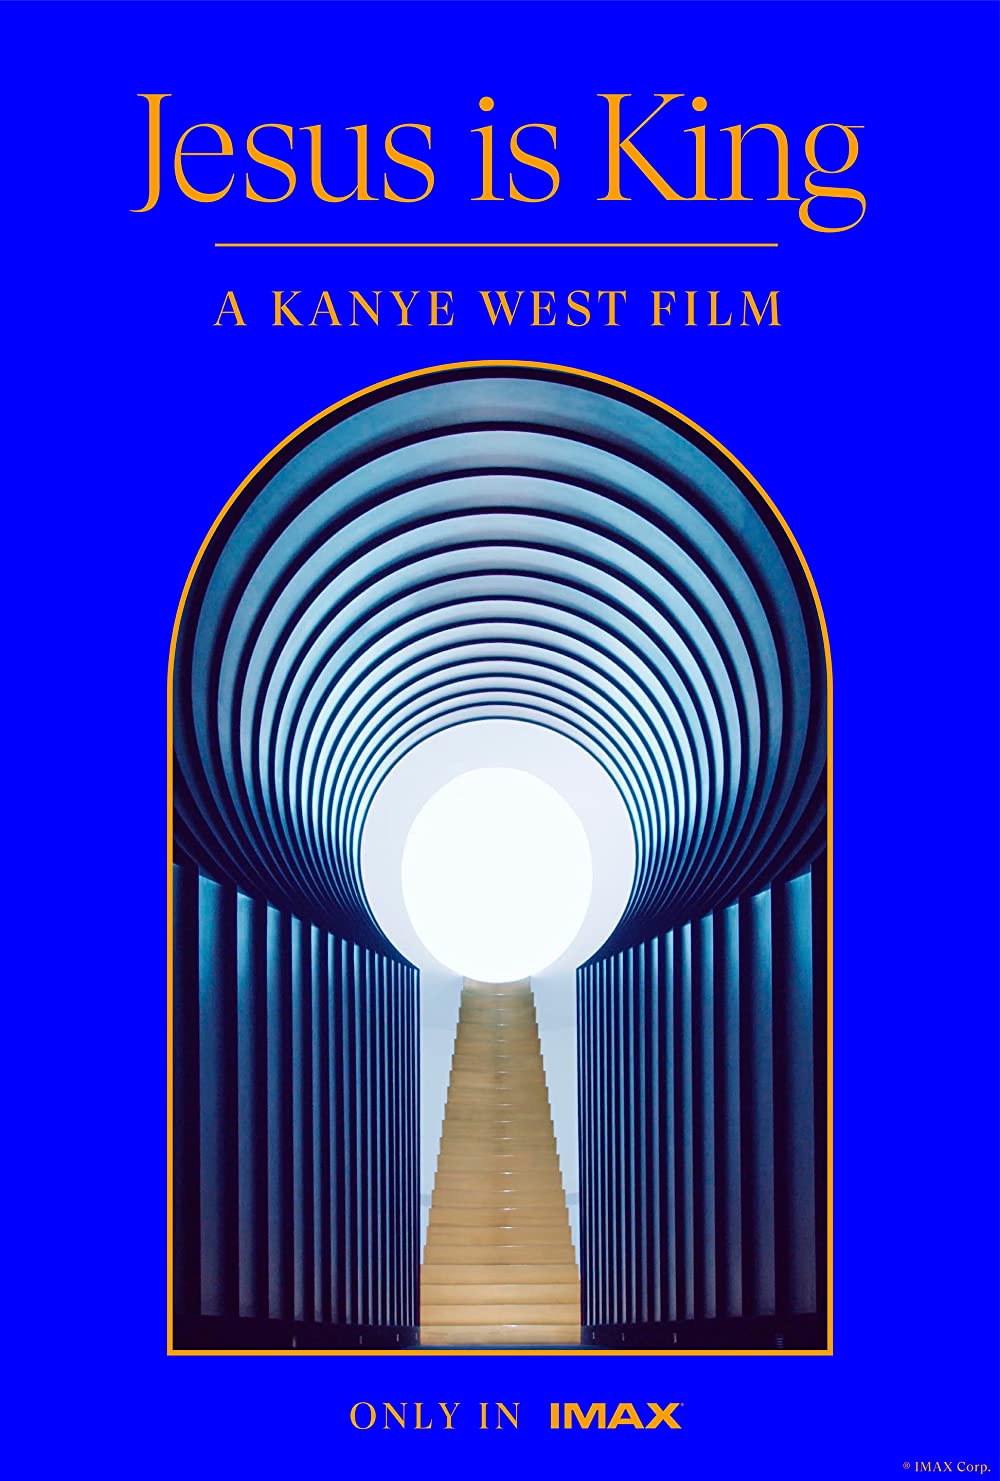 Filmbeschreibung zu Kanye West: Jesus is King